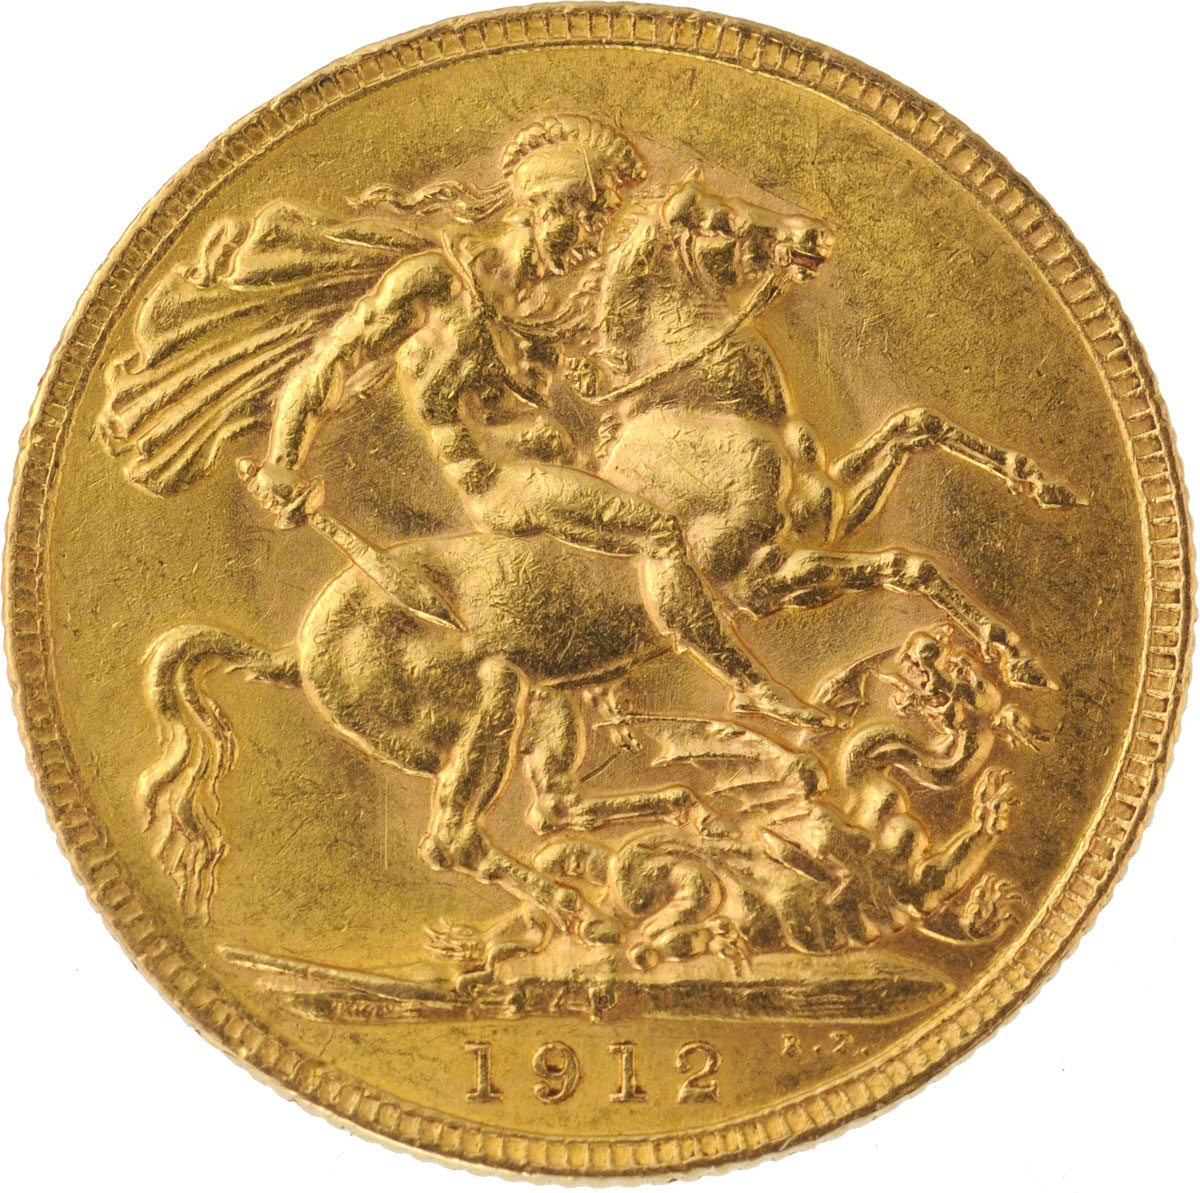 1912 Γεώργιος Ε’ (Νομισματοκοπείο Περθ)